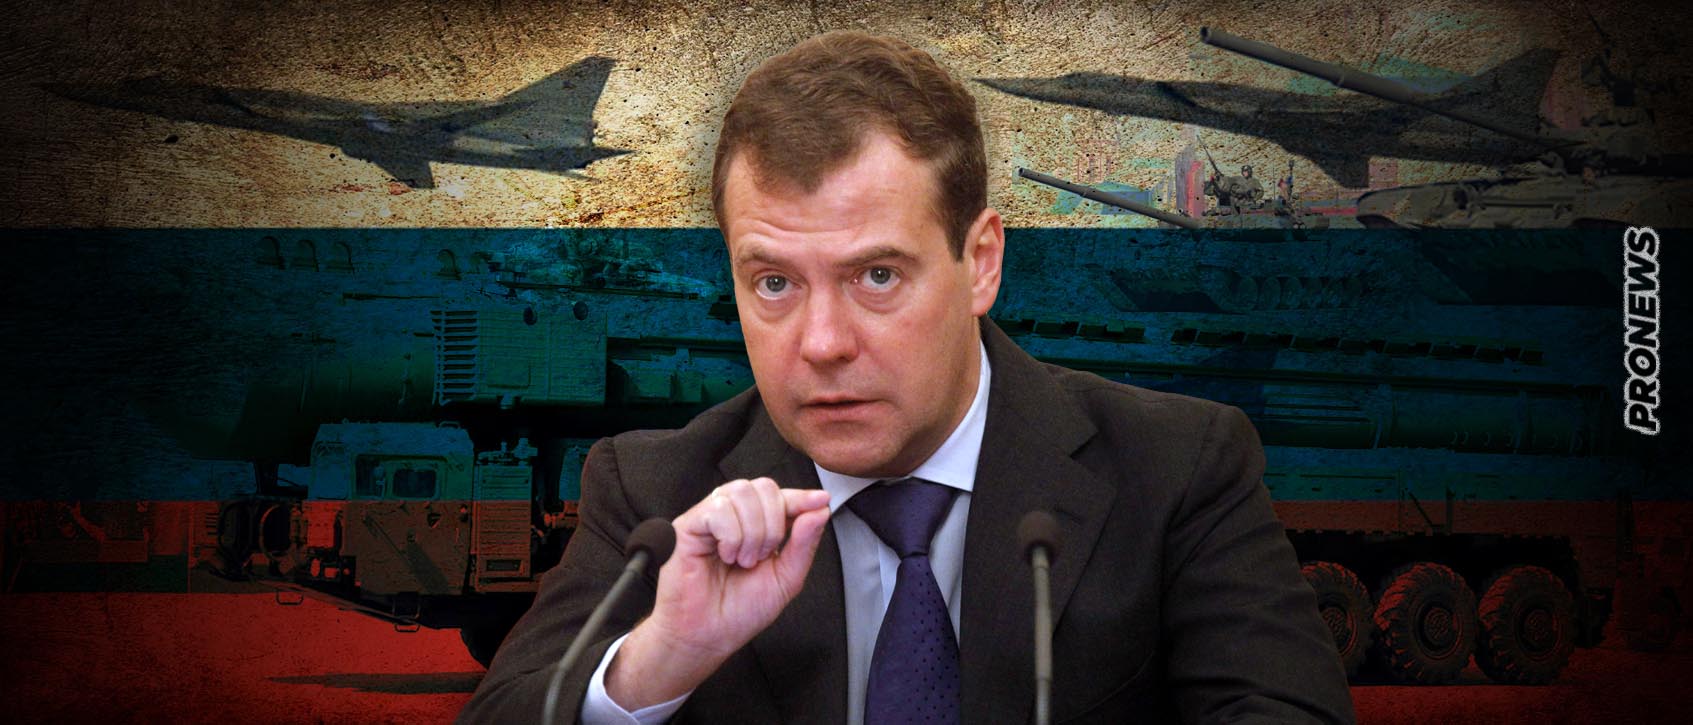 Ν.Μεντβέντεφ: «Η Ουκρανία ξεκίνησε την αντεπίθεσή της – Μόλις τους απωθήσουμε θα είναι η σειρά μας να επιτεθούμε»